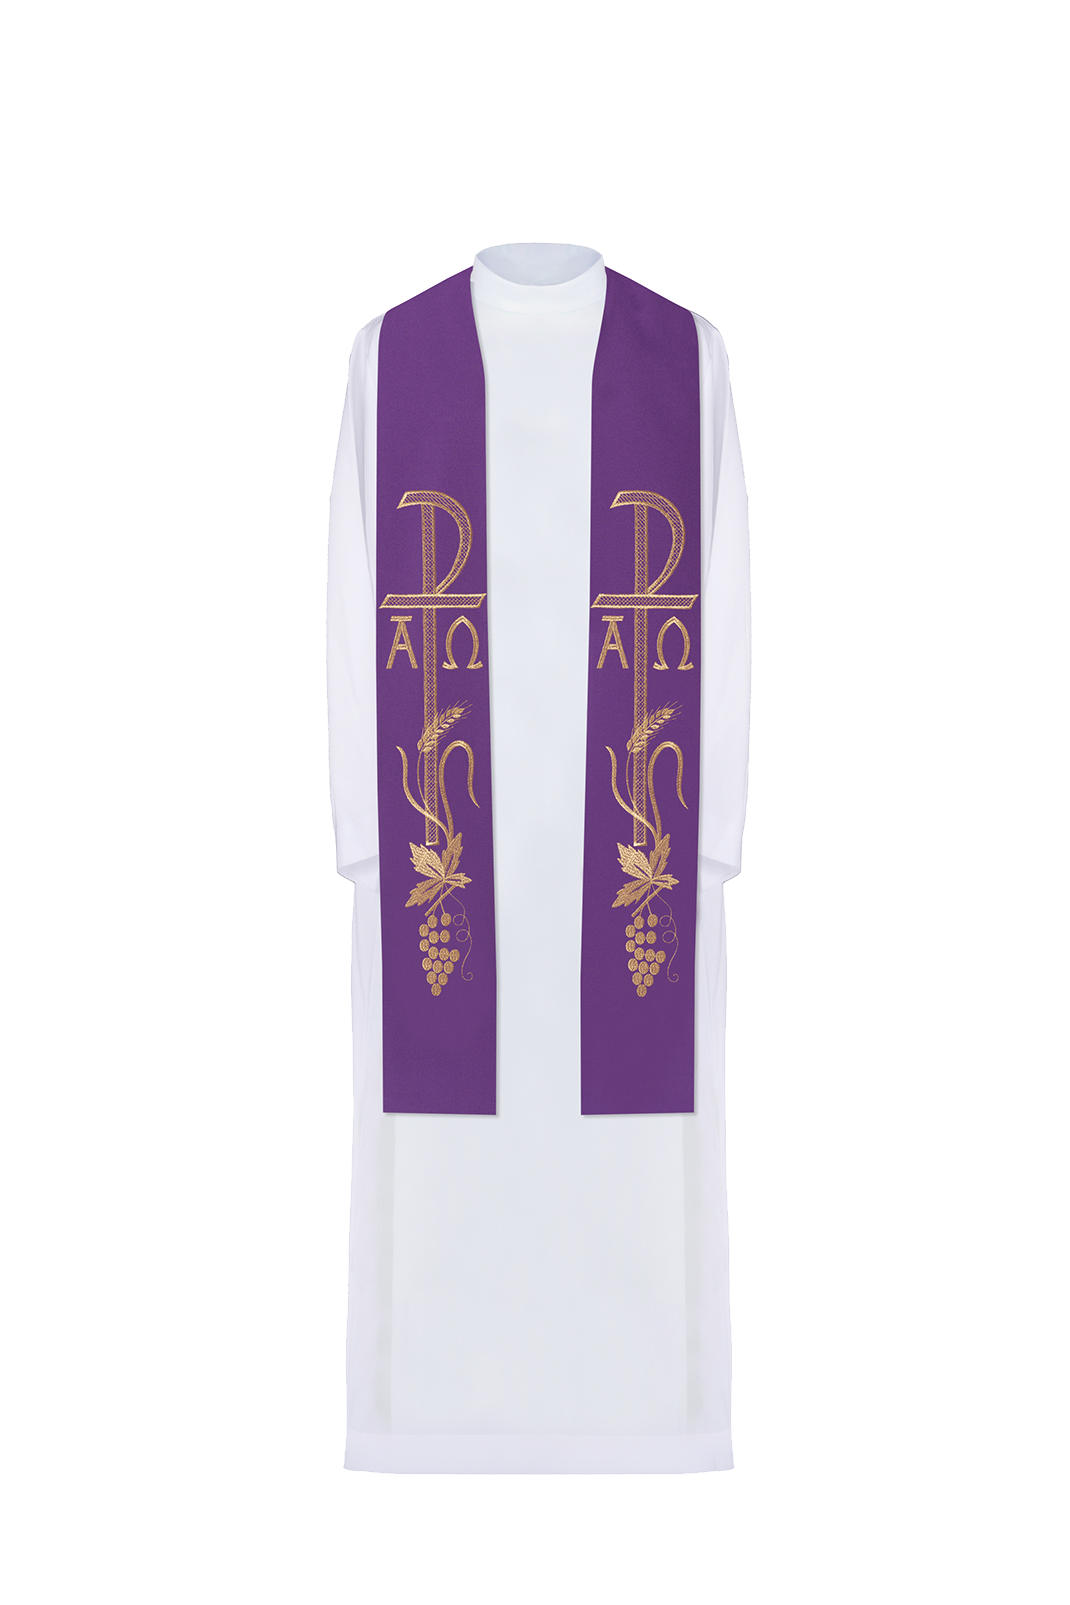 Stuła kapłańska fioletowa haftowana Alfa i Omega